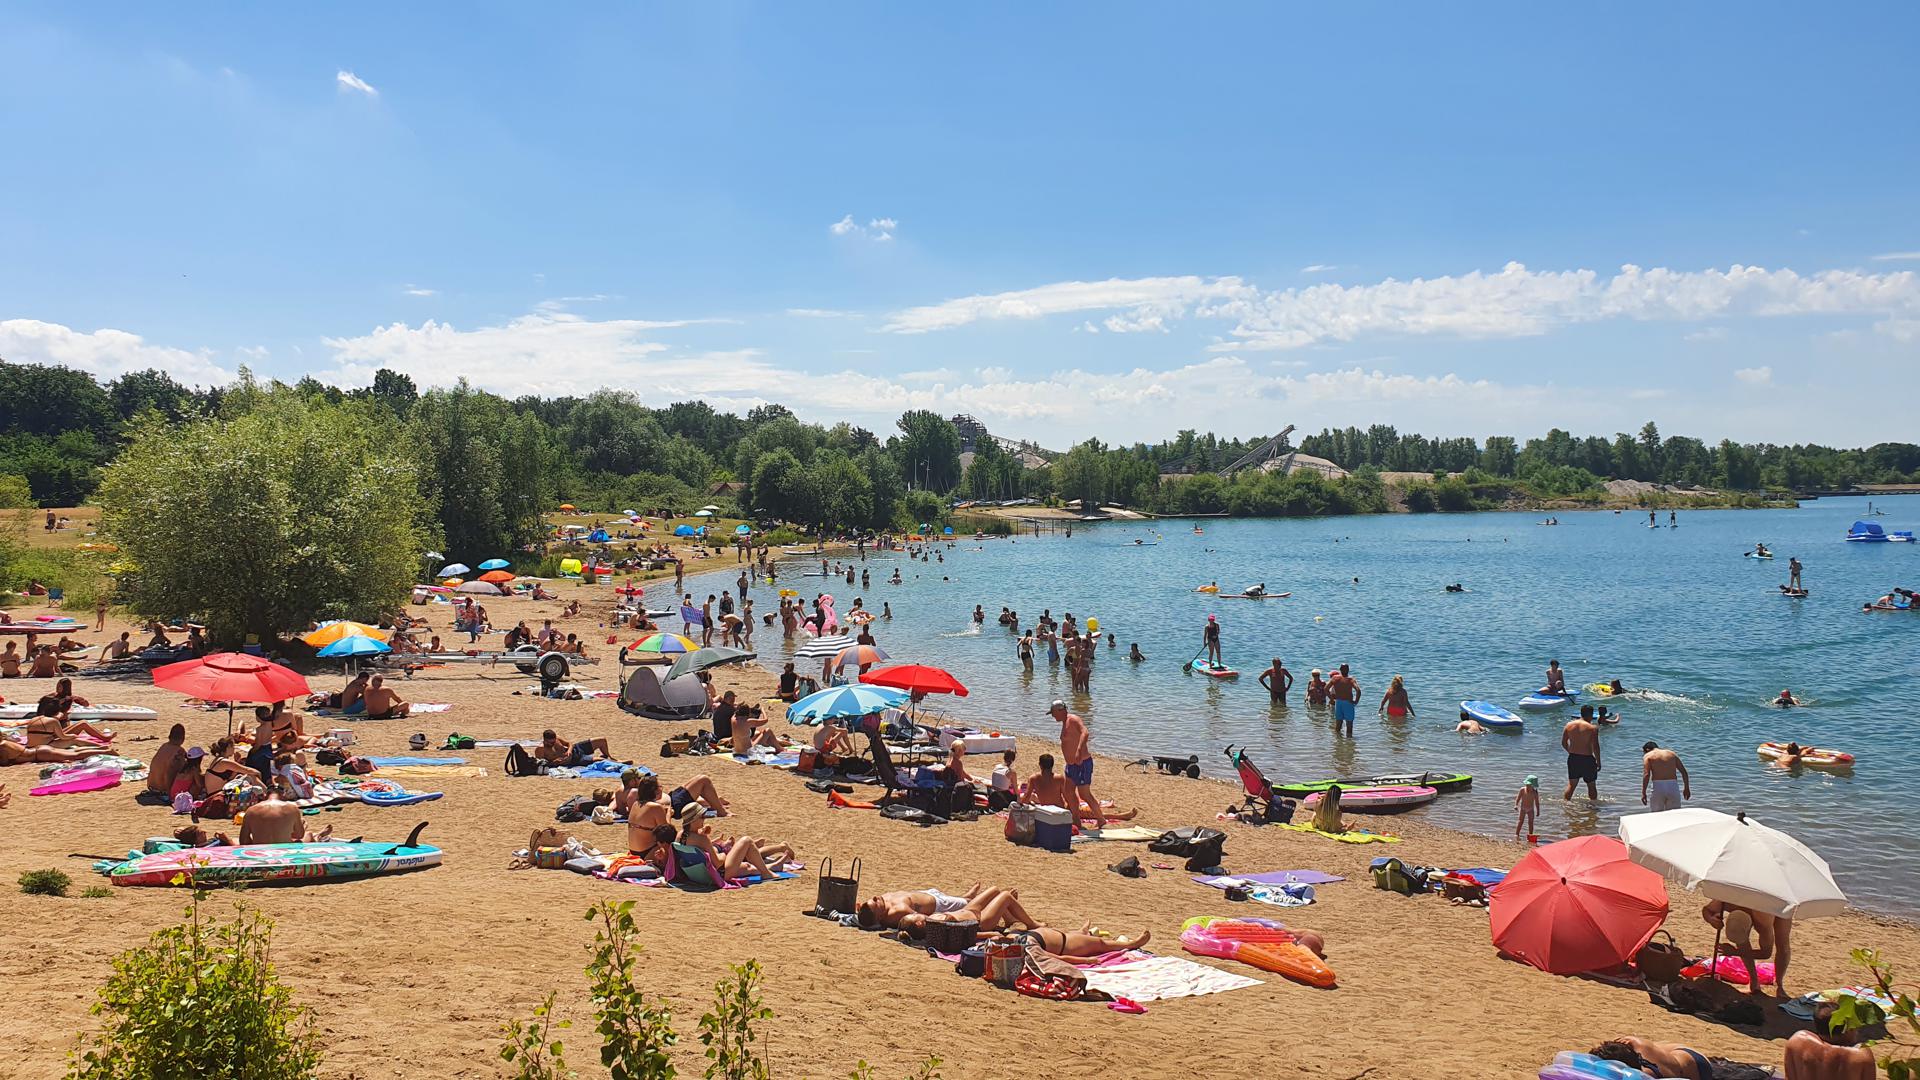 Der Epplesee in Rheinstetten ist bei Badegästen aus der Region und dem weiteren Umkreis bekannt und beliebt. Auch diesen Sommer werden wieder viele Menschen erwartet.